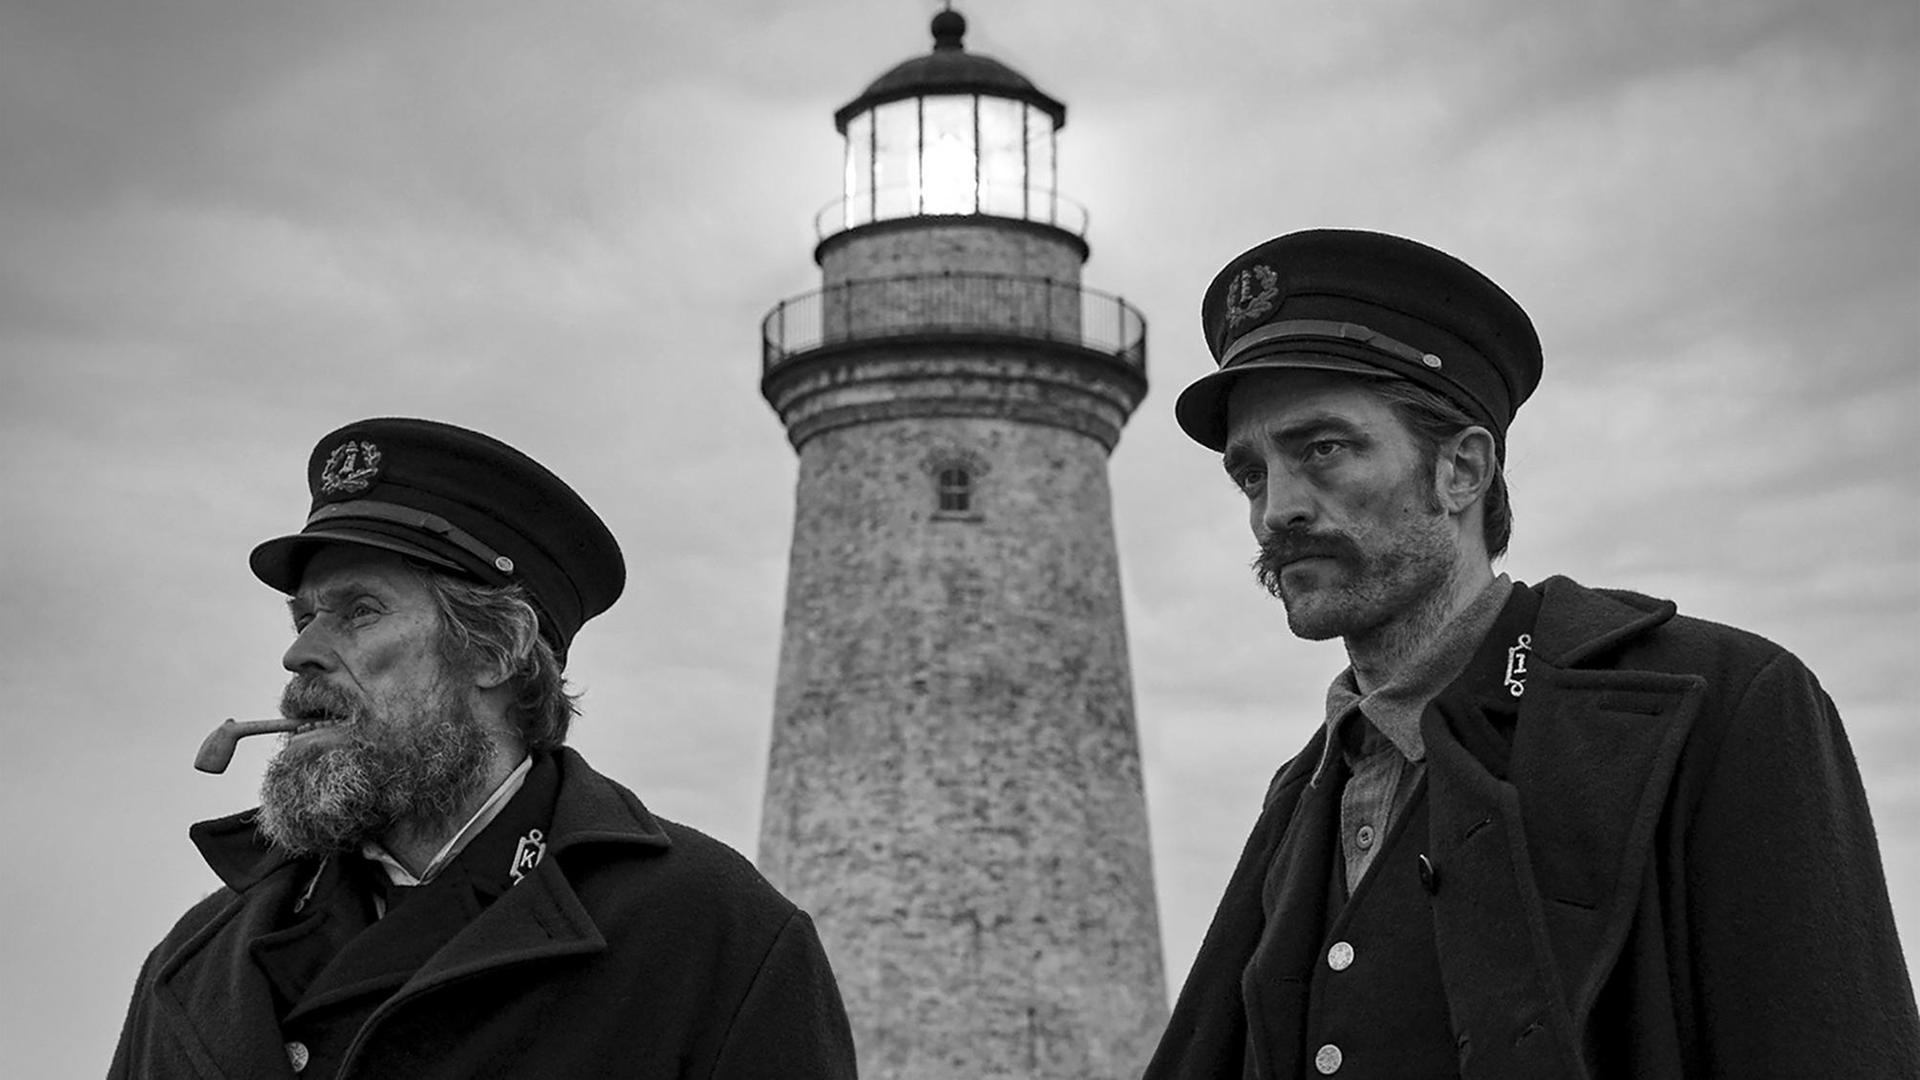 Die Schauspieler Willem Dafoe und Robert Pattinson spielen in "Der Leuchtturm" zwei Leuchtturmwärter am Ende des 19. Jahrhunderts. Die zwei Männer stehen in schwarz-weißer Kulisse vor einem Leuchtturm.